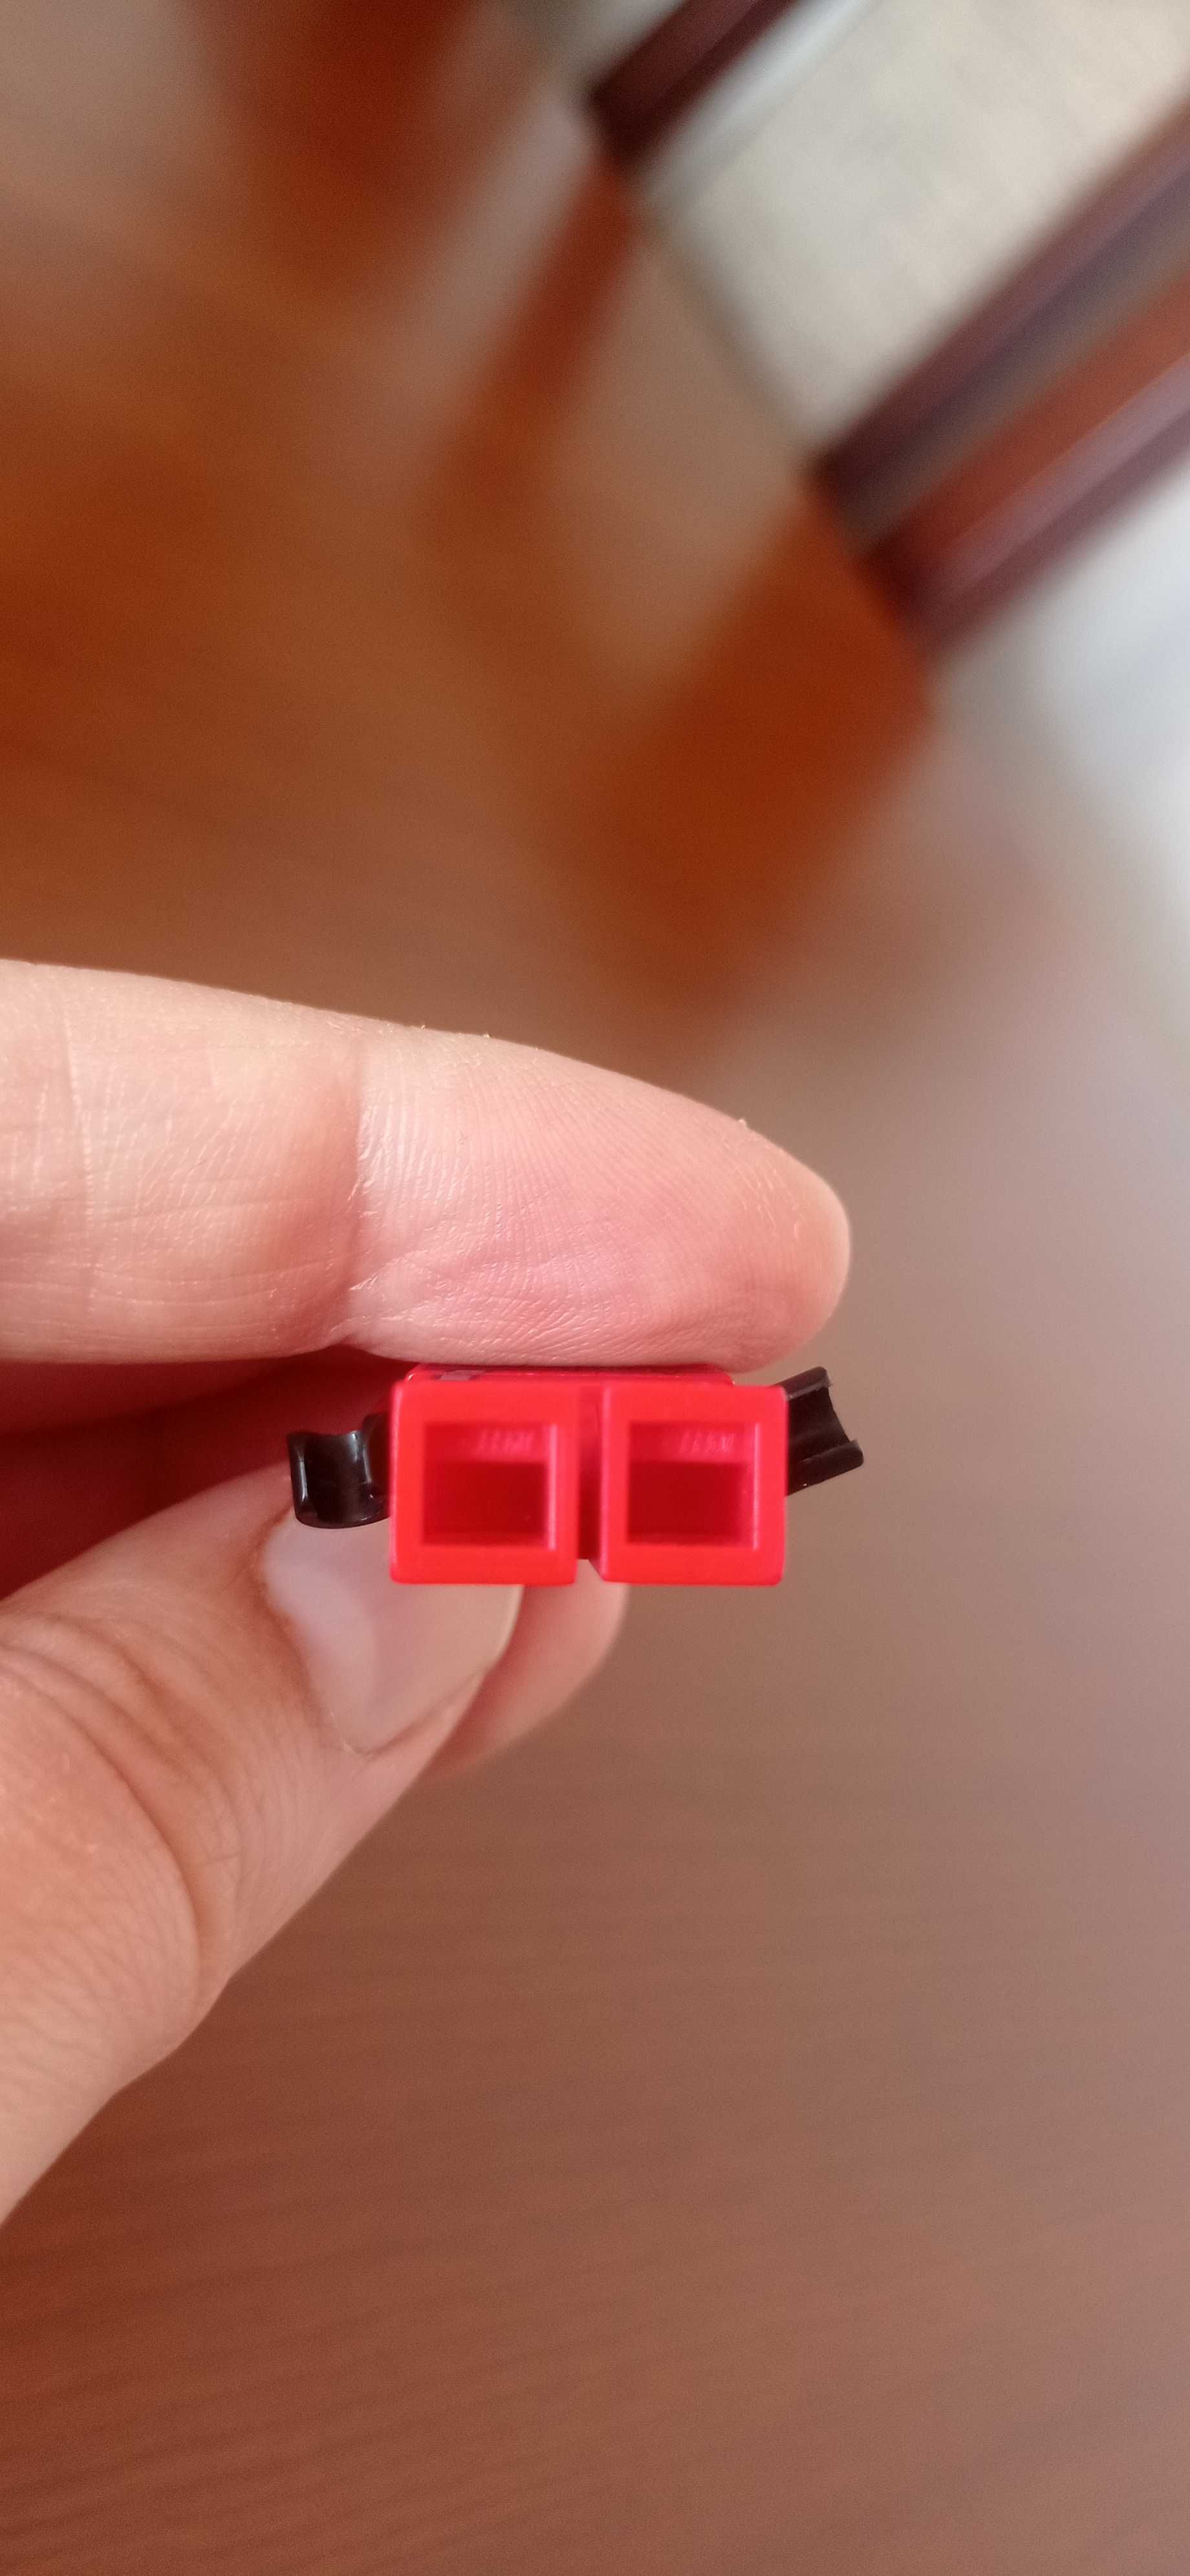 Figurka LEGO, czerwony ludzik